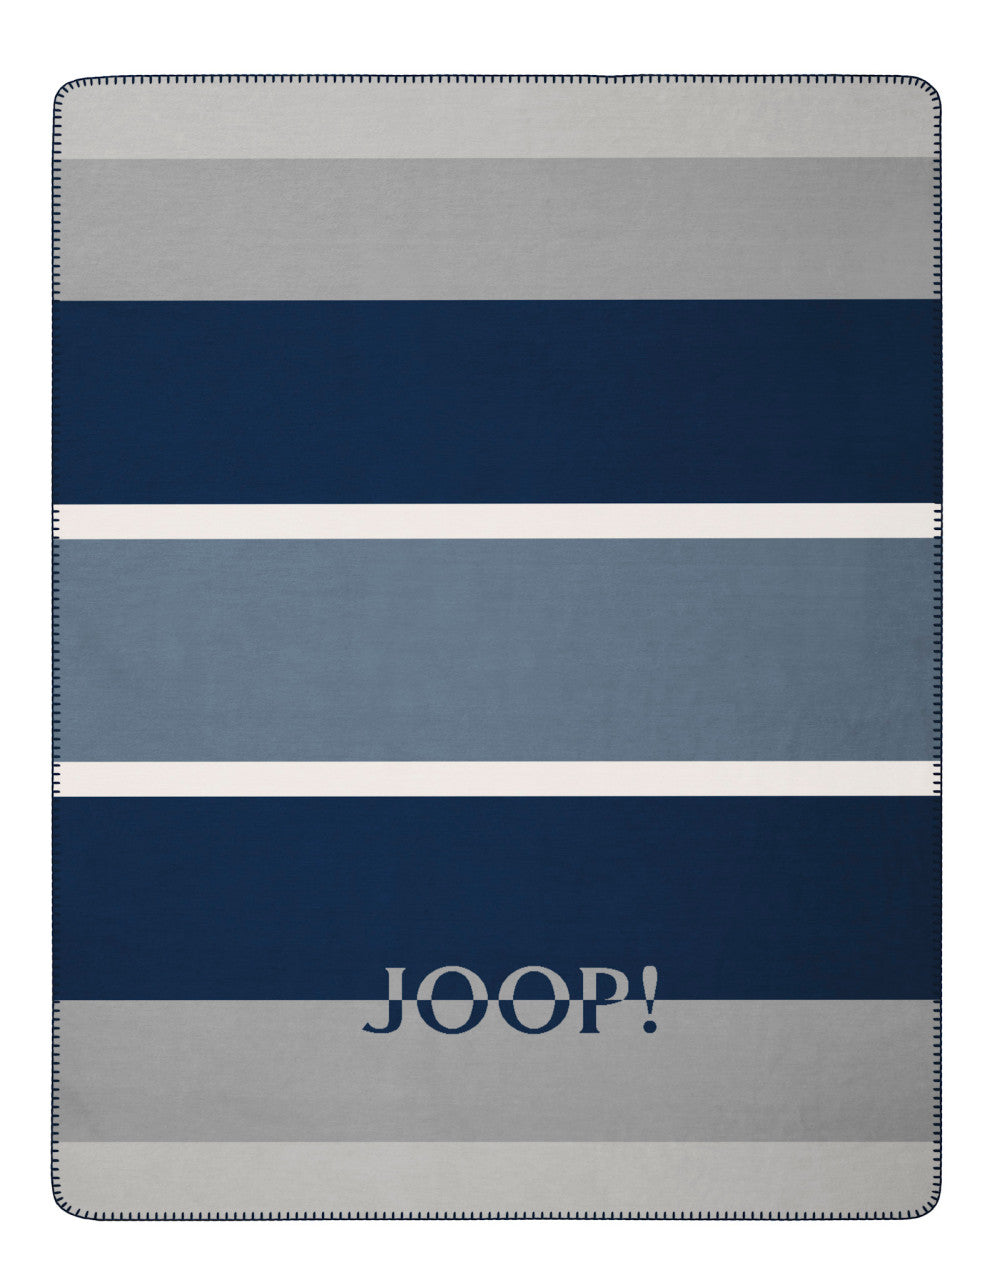 JOOP! Wohndecke limit 150x200 cm navy-silber